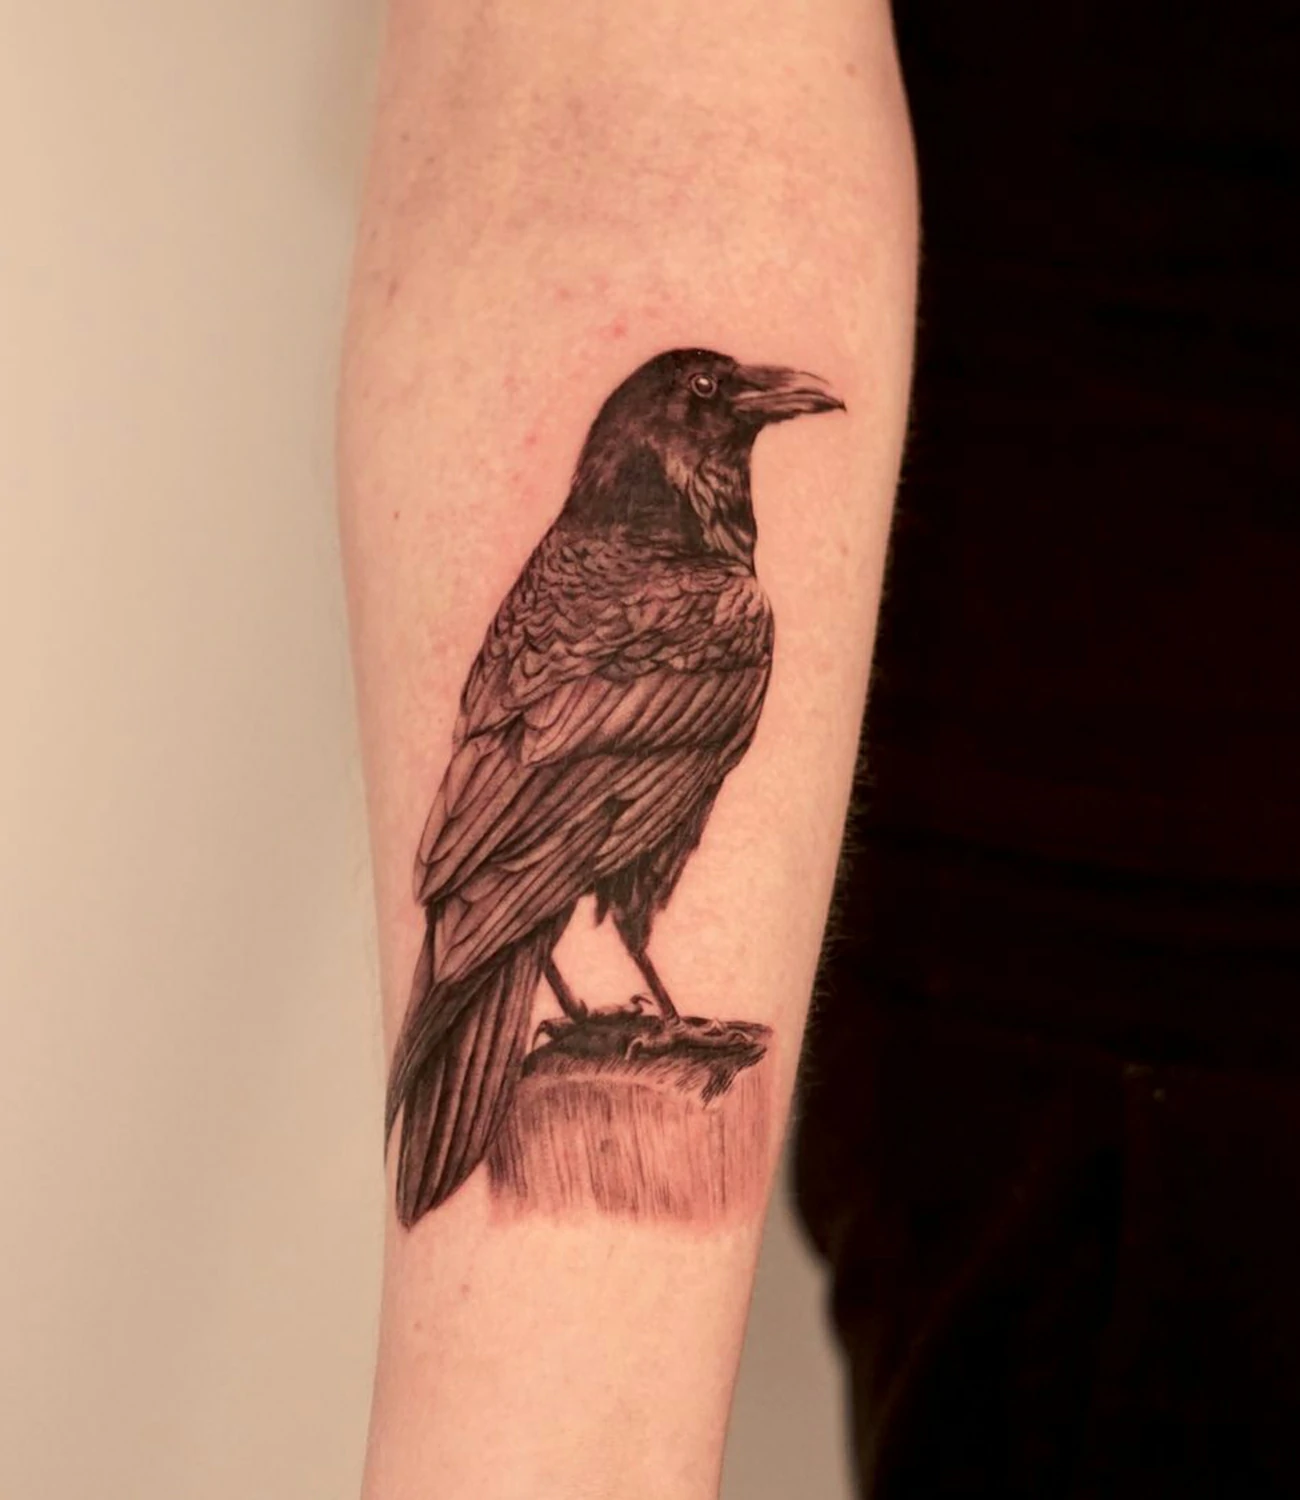 Minimalist small raven tattoo: A very simple and small raven tattoo for minimalists.

